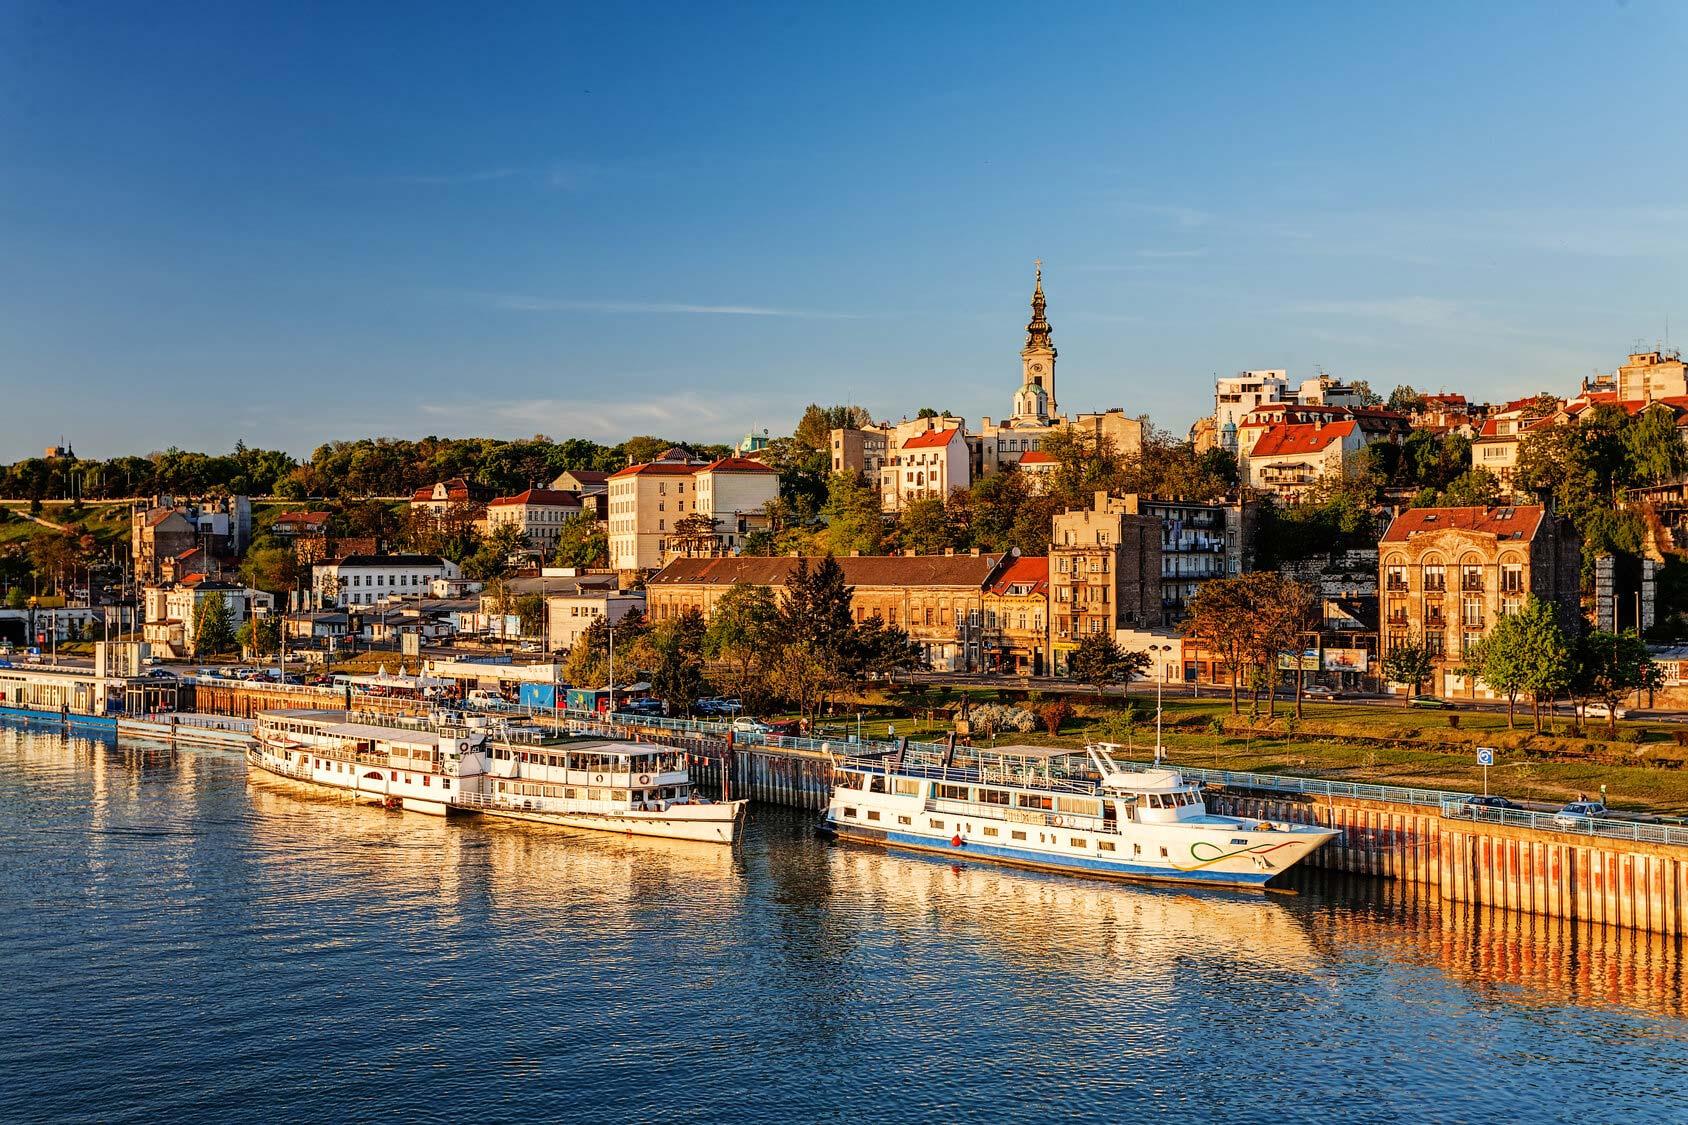 Belgrad toppar listan över storstäder där genomsnittpriset på bra hotell är lägst.